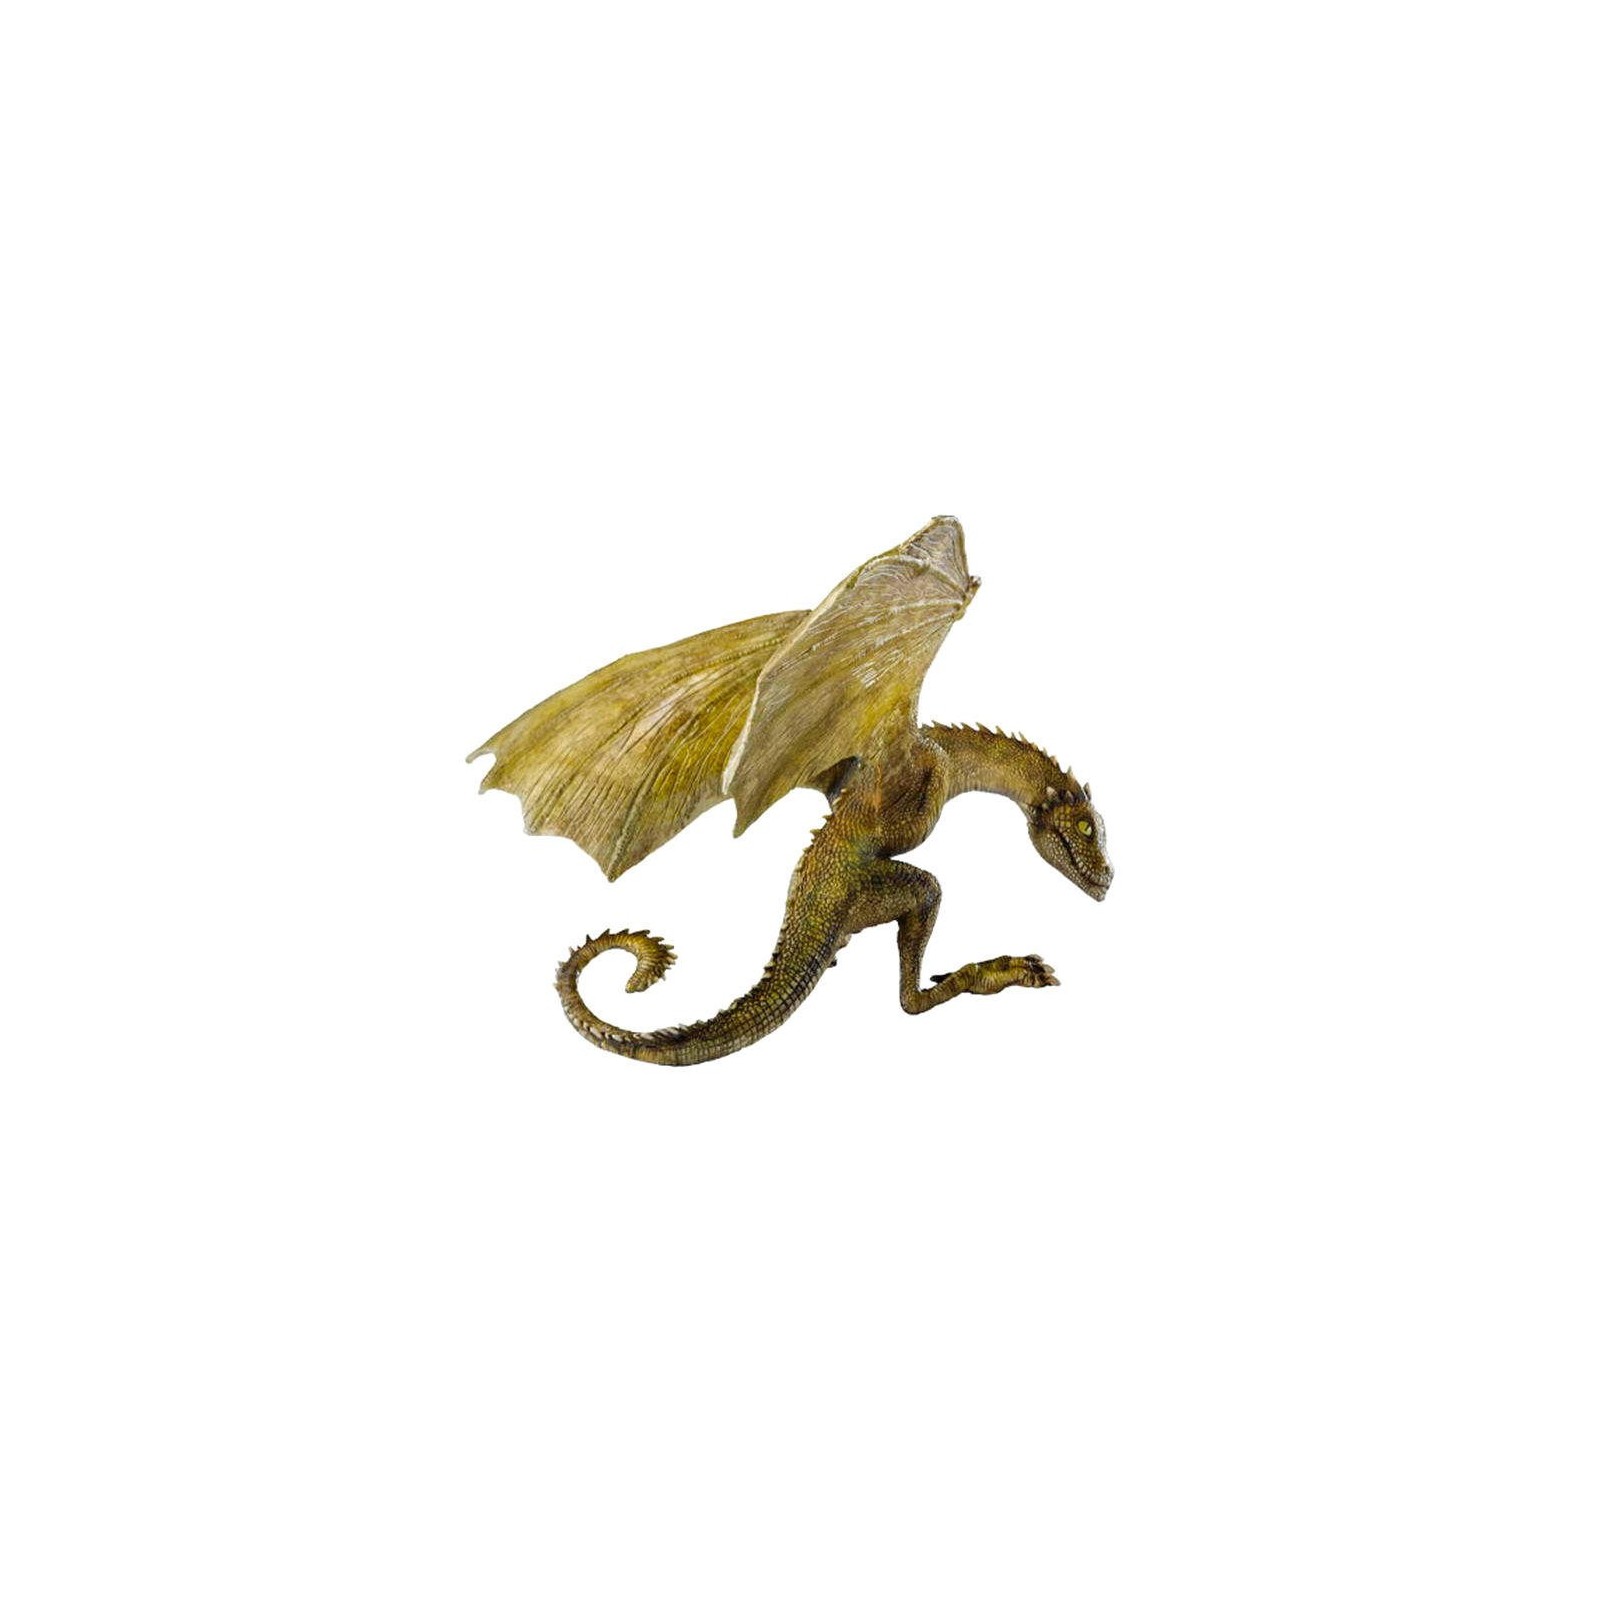 Figura Dragon Rhaegal Juego De Tronos 11Cm